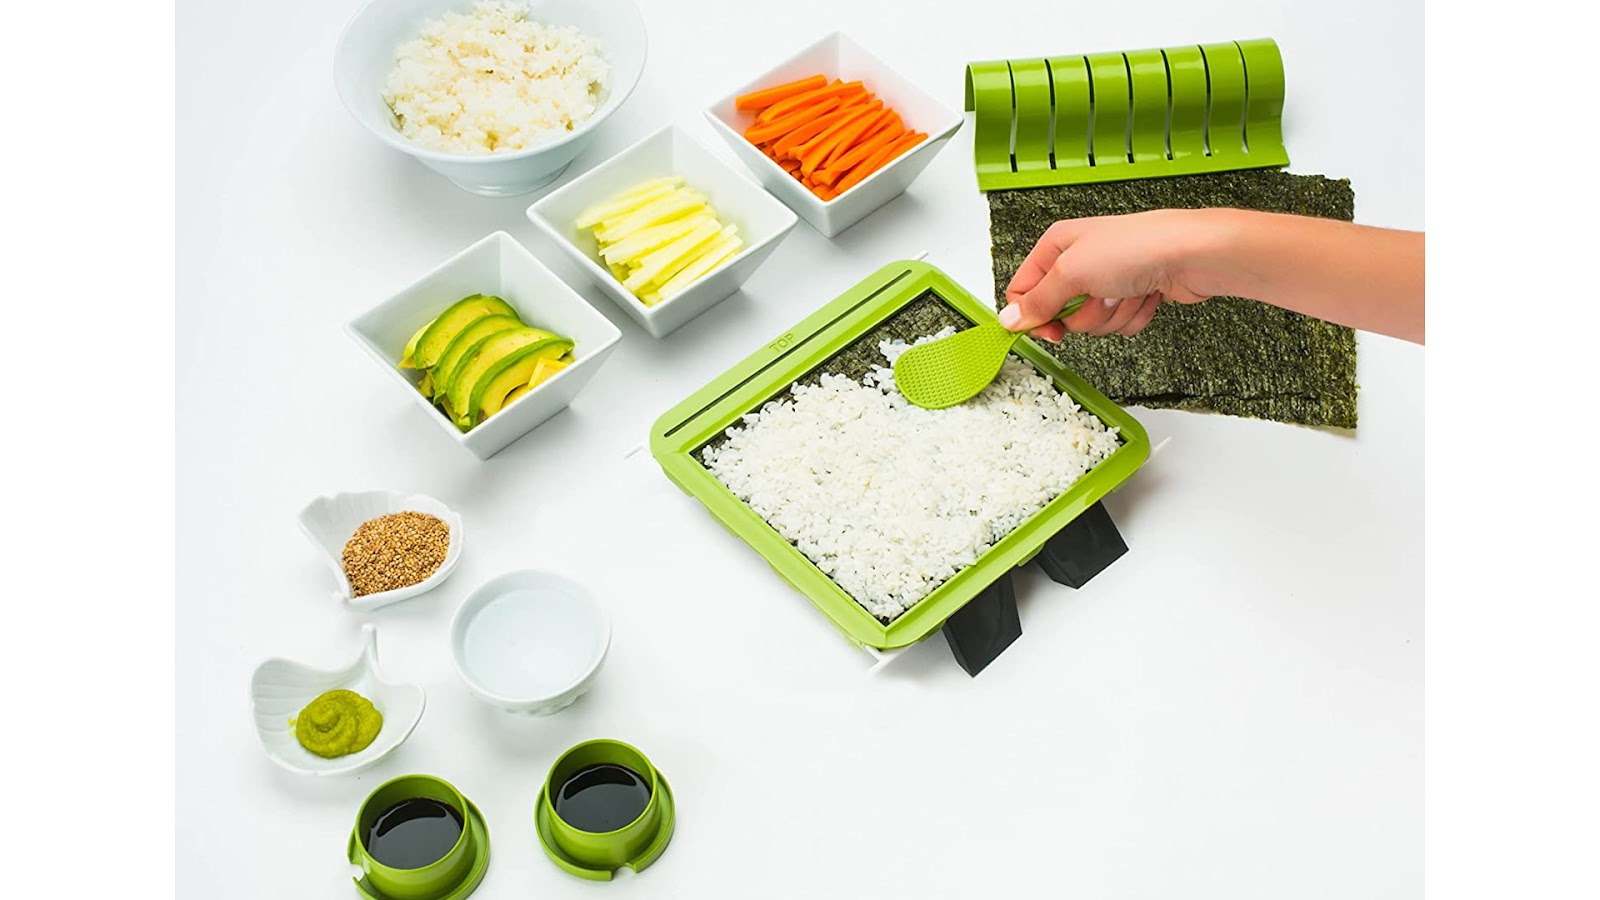 Original Aya Bazooka Kit Sushi Making Kit Knife - Sealed Box!